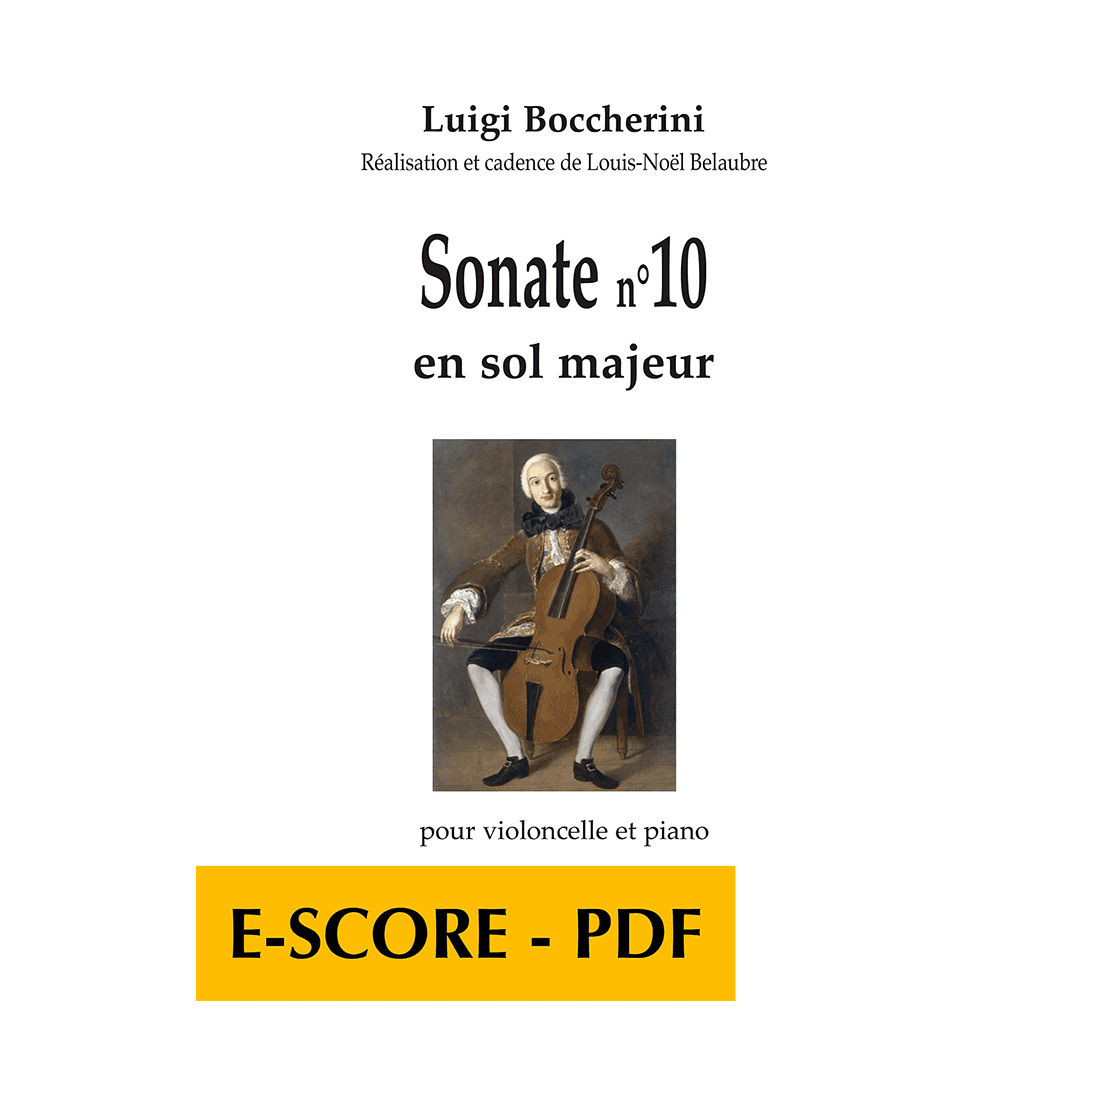 Sonate n°10 en sol majeur for cello and piano - E-score PDF